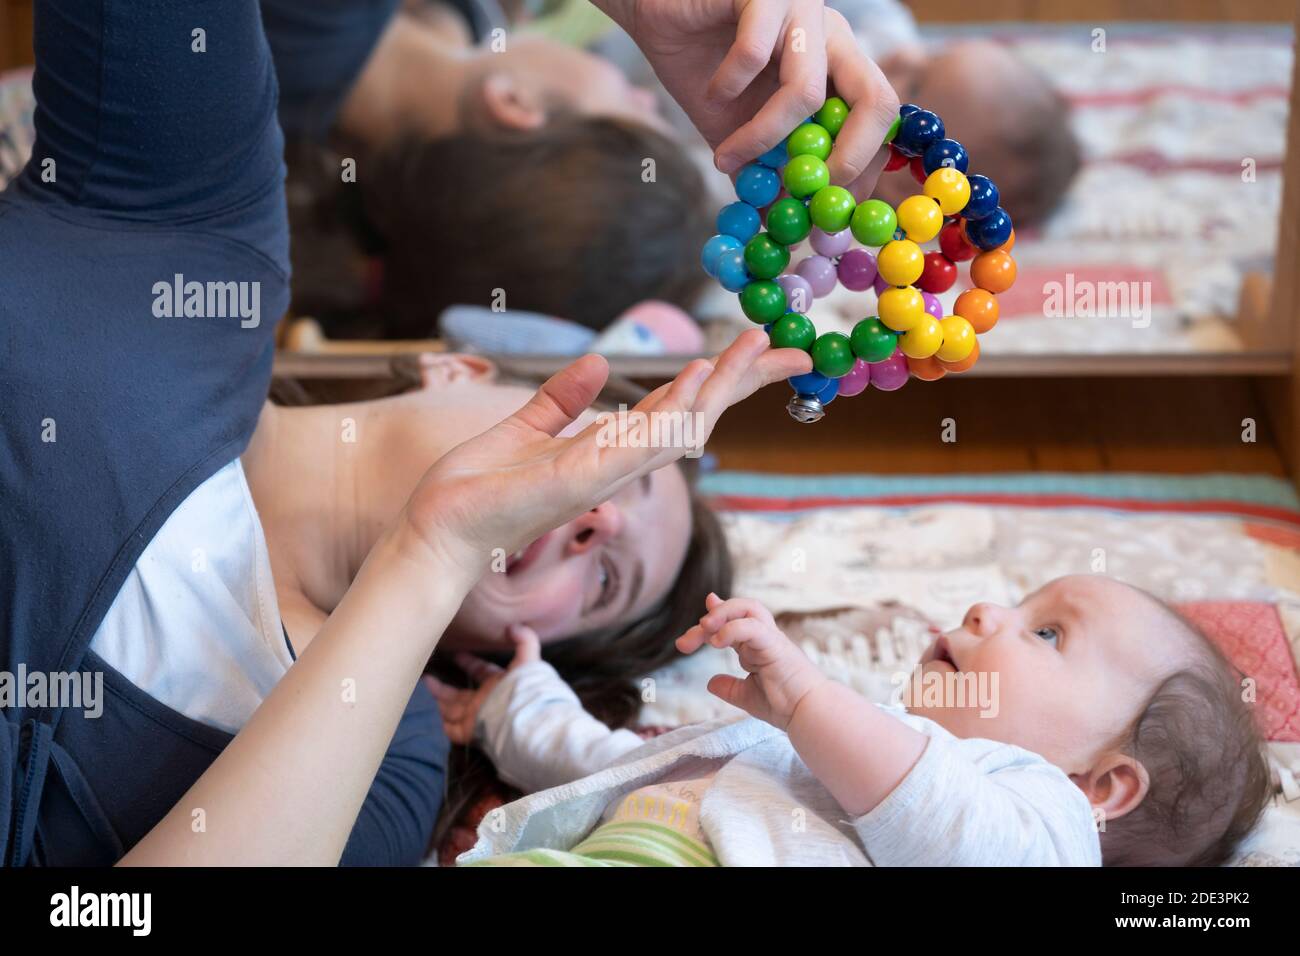 Eine Mutter interagiert und spielt mit ihrer 4 Monate alten Tochter, zeigt ihr ein Spielzeug, wobei beide auf einer Spielmatte mit einem Spiegel dahinter liegen, Großbritannien Stockfoto